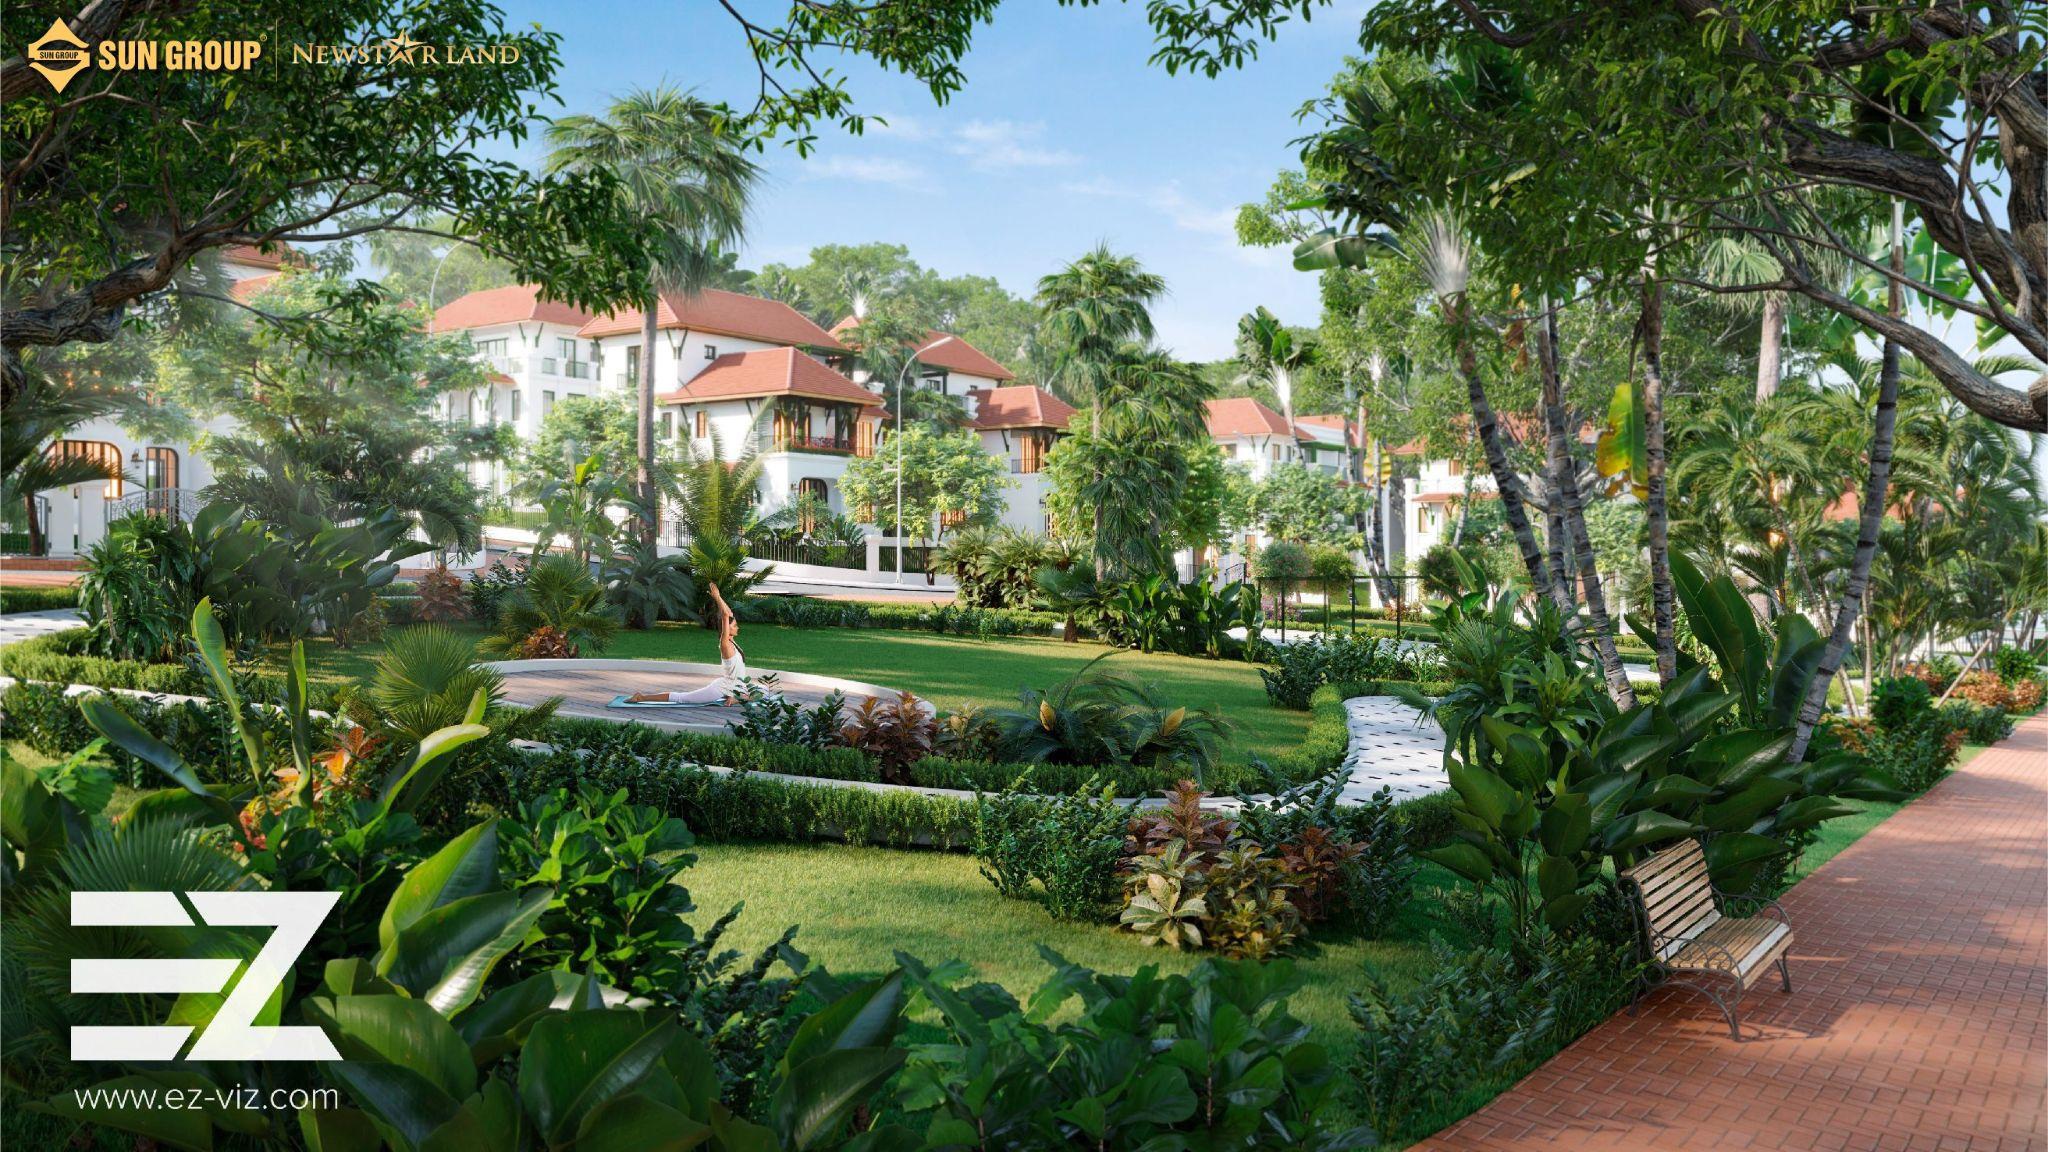 Sun Tropical Village mang phong cách nhiệt đới với sắc xanh kỳ vỹ.